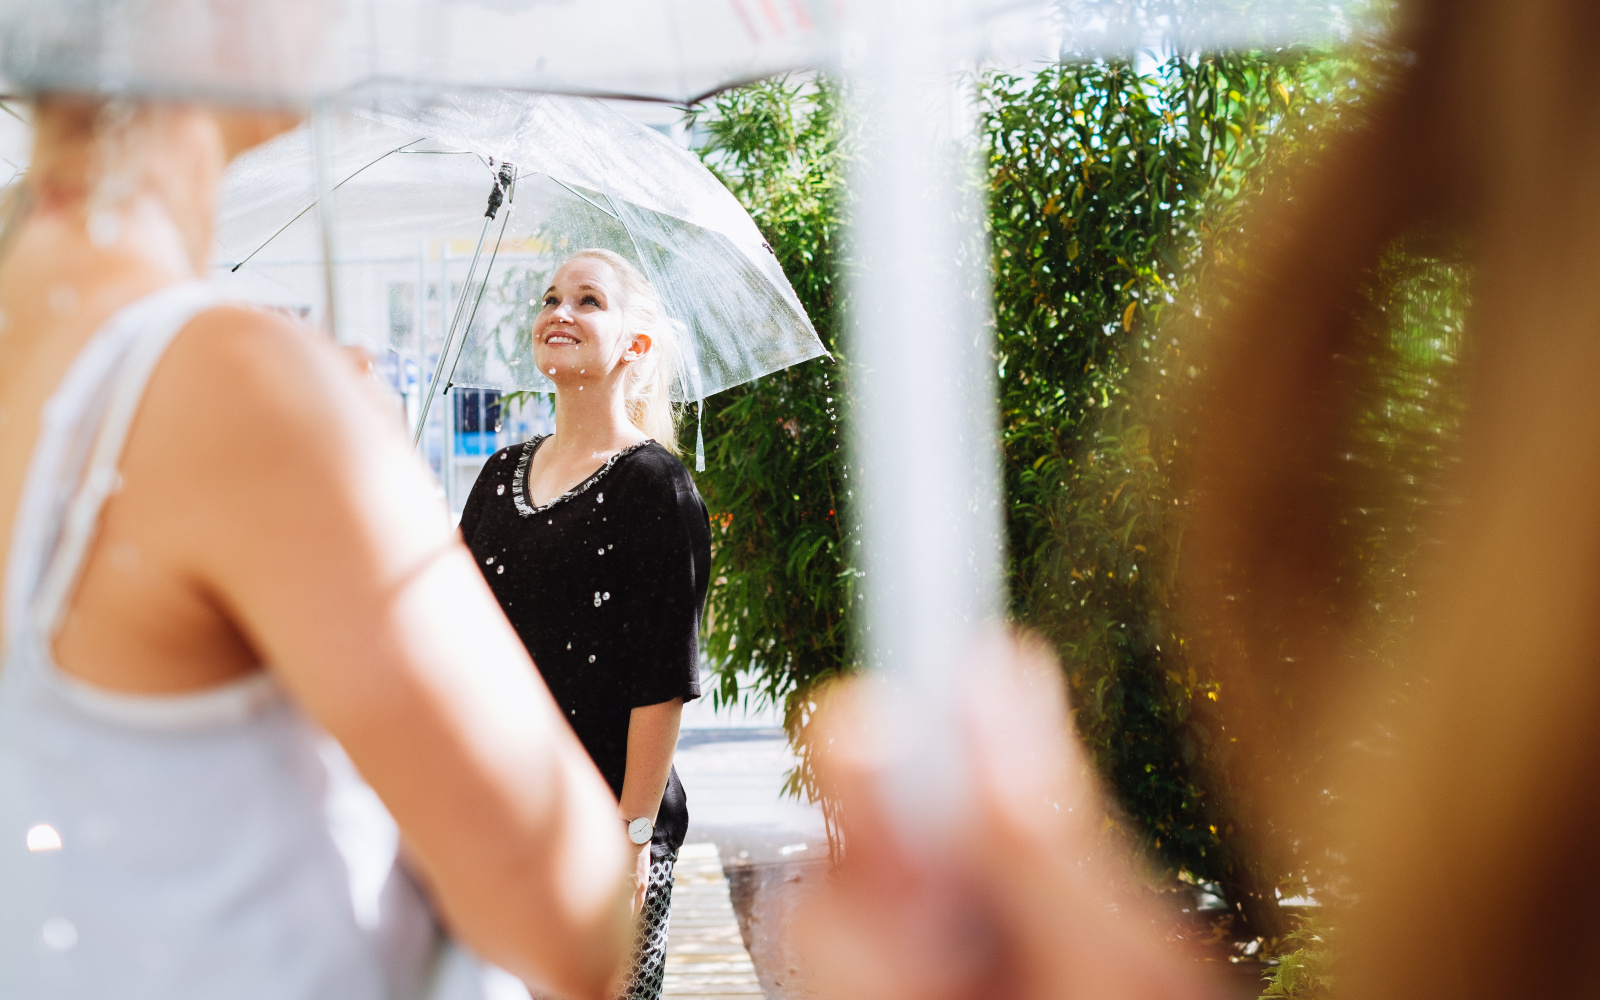 ;ehrere Personen stehen mit Regenschirmen unter der Raindance-Installation